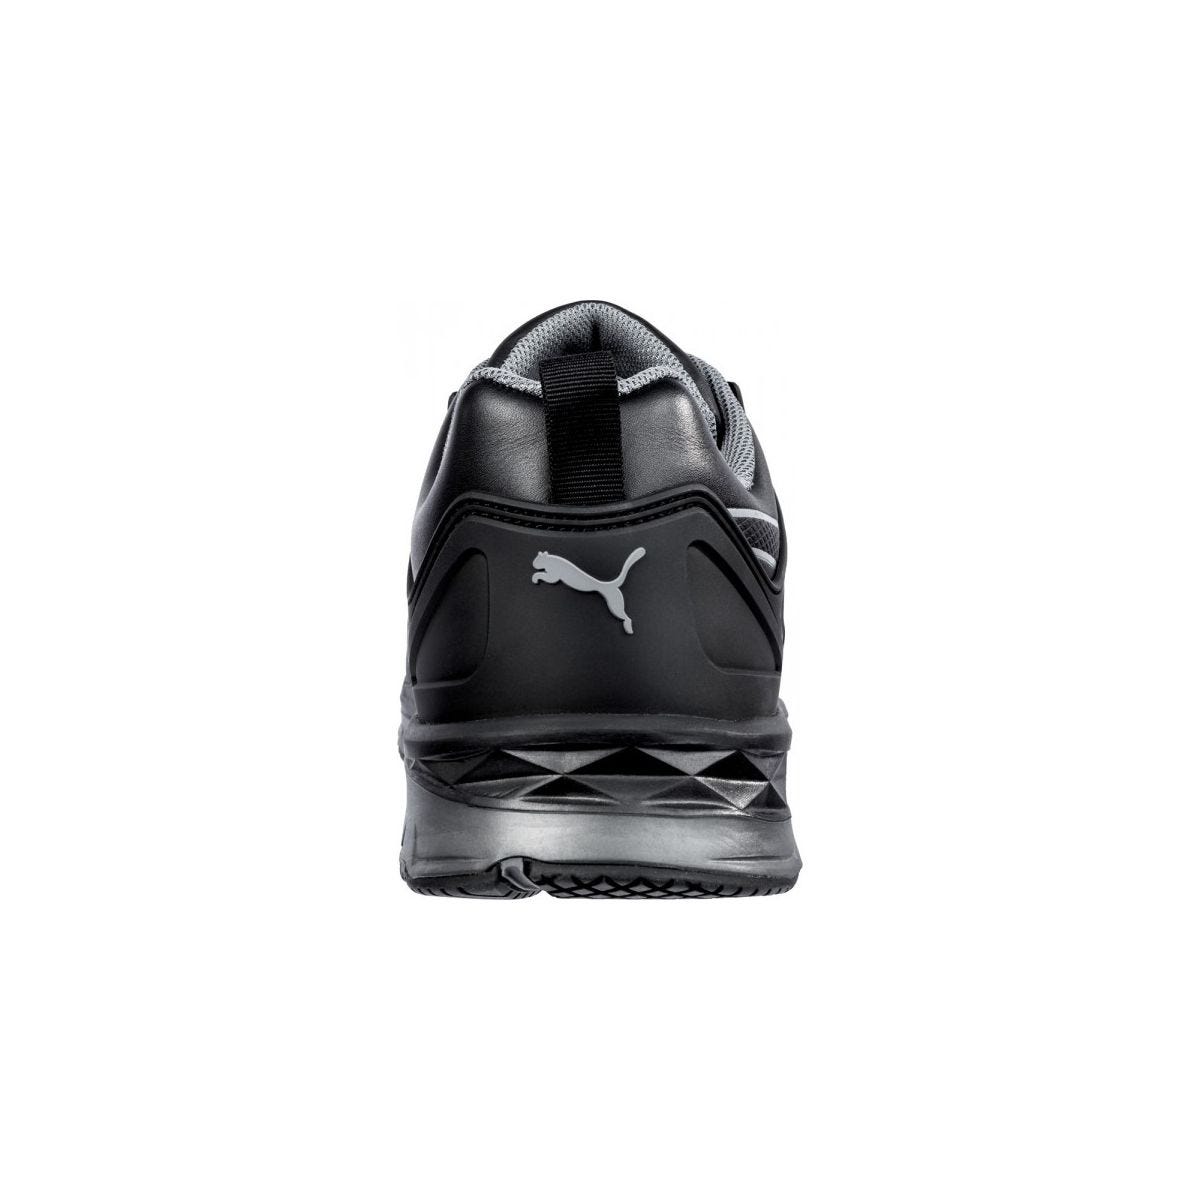 Chaussures de sécurité Velocity 2.0 Noir Low S3 - Puma - Taille 47 1